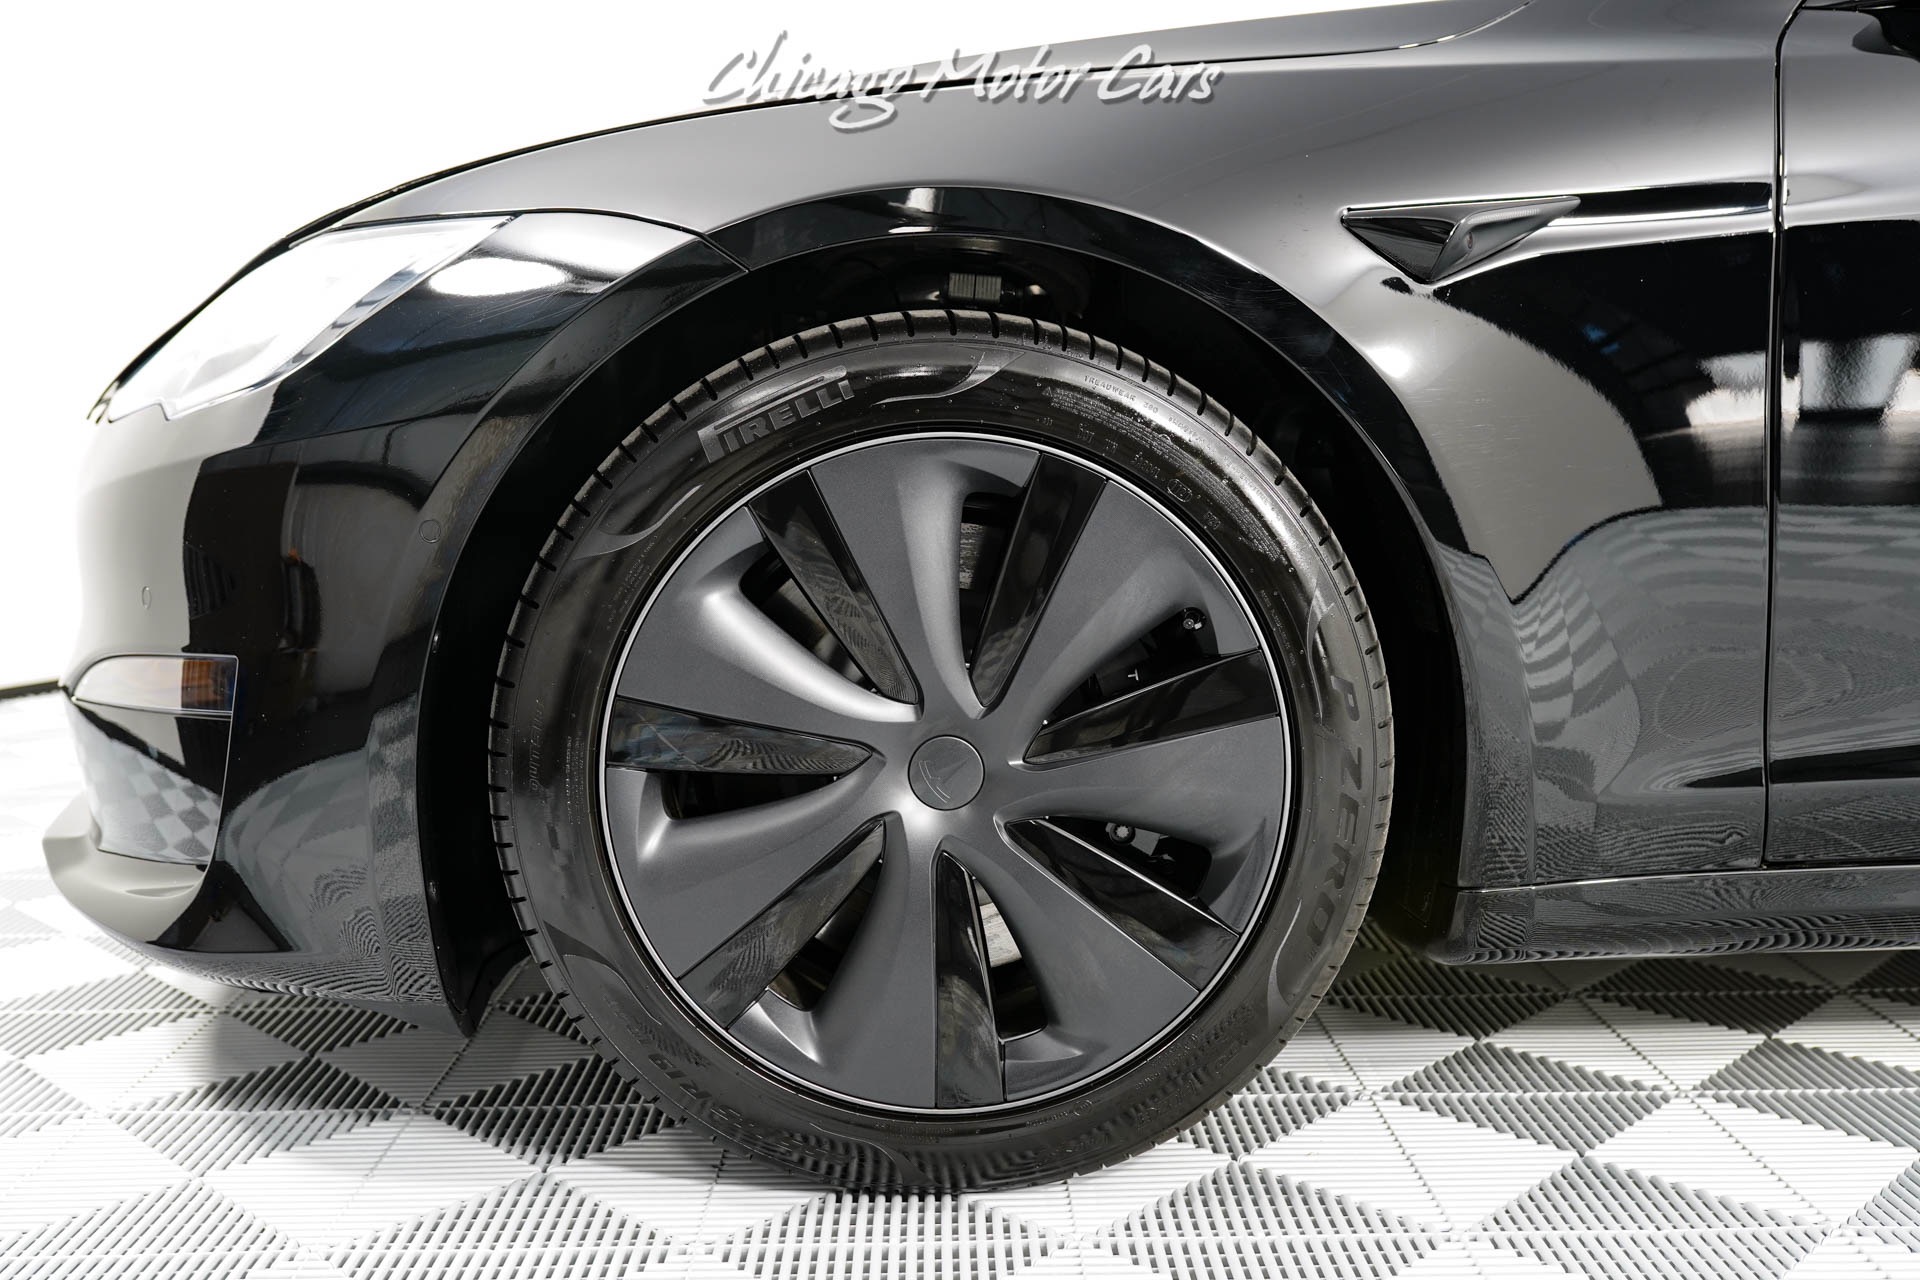 Used-2021-Tesla-Model-S-Plaid-Sedan-Full-Self-Driving-FASTEST-Production-Sedan-Black-LOADED